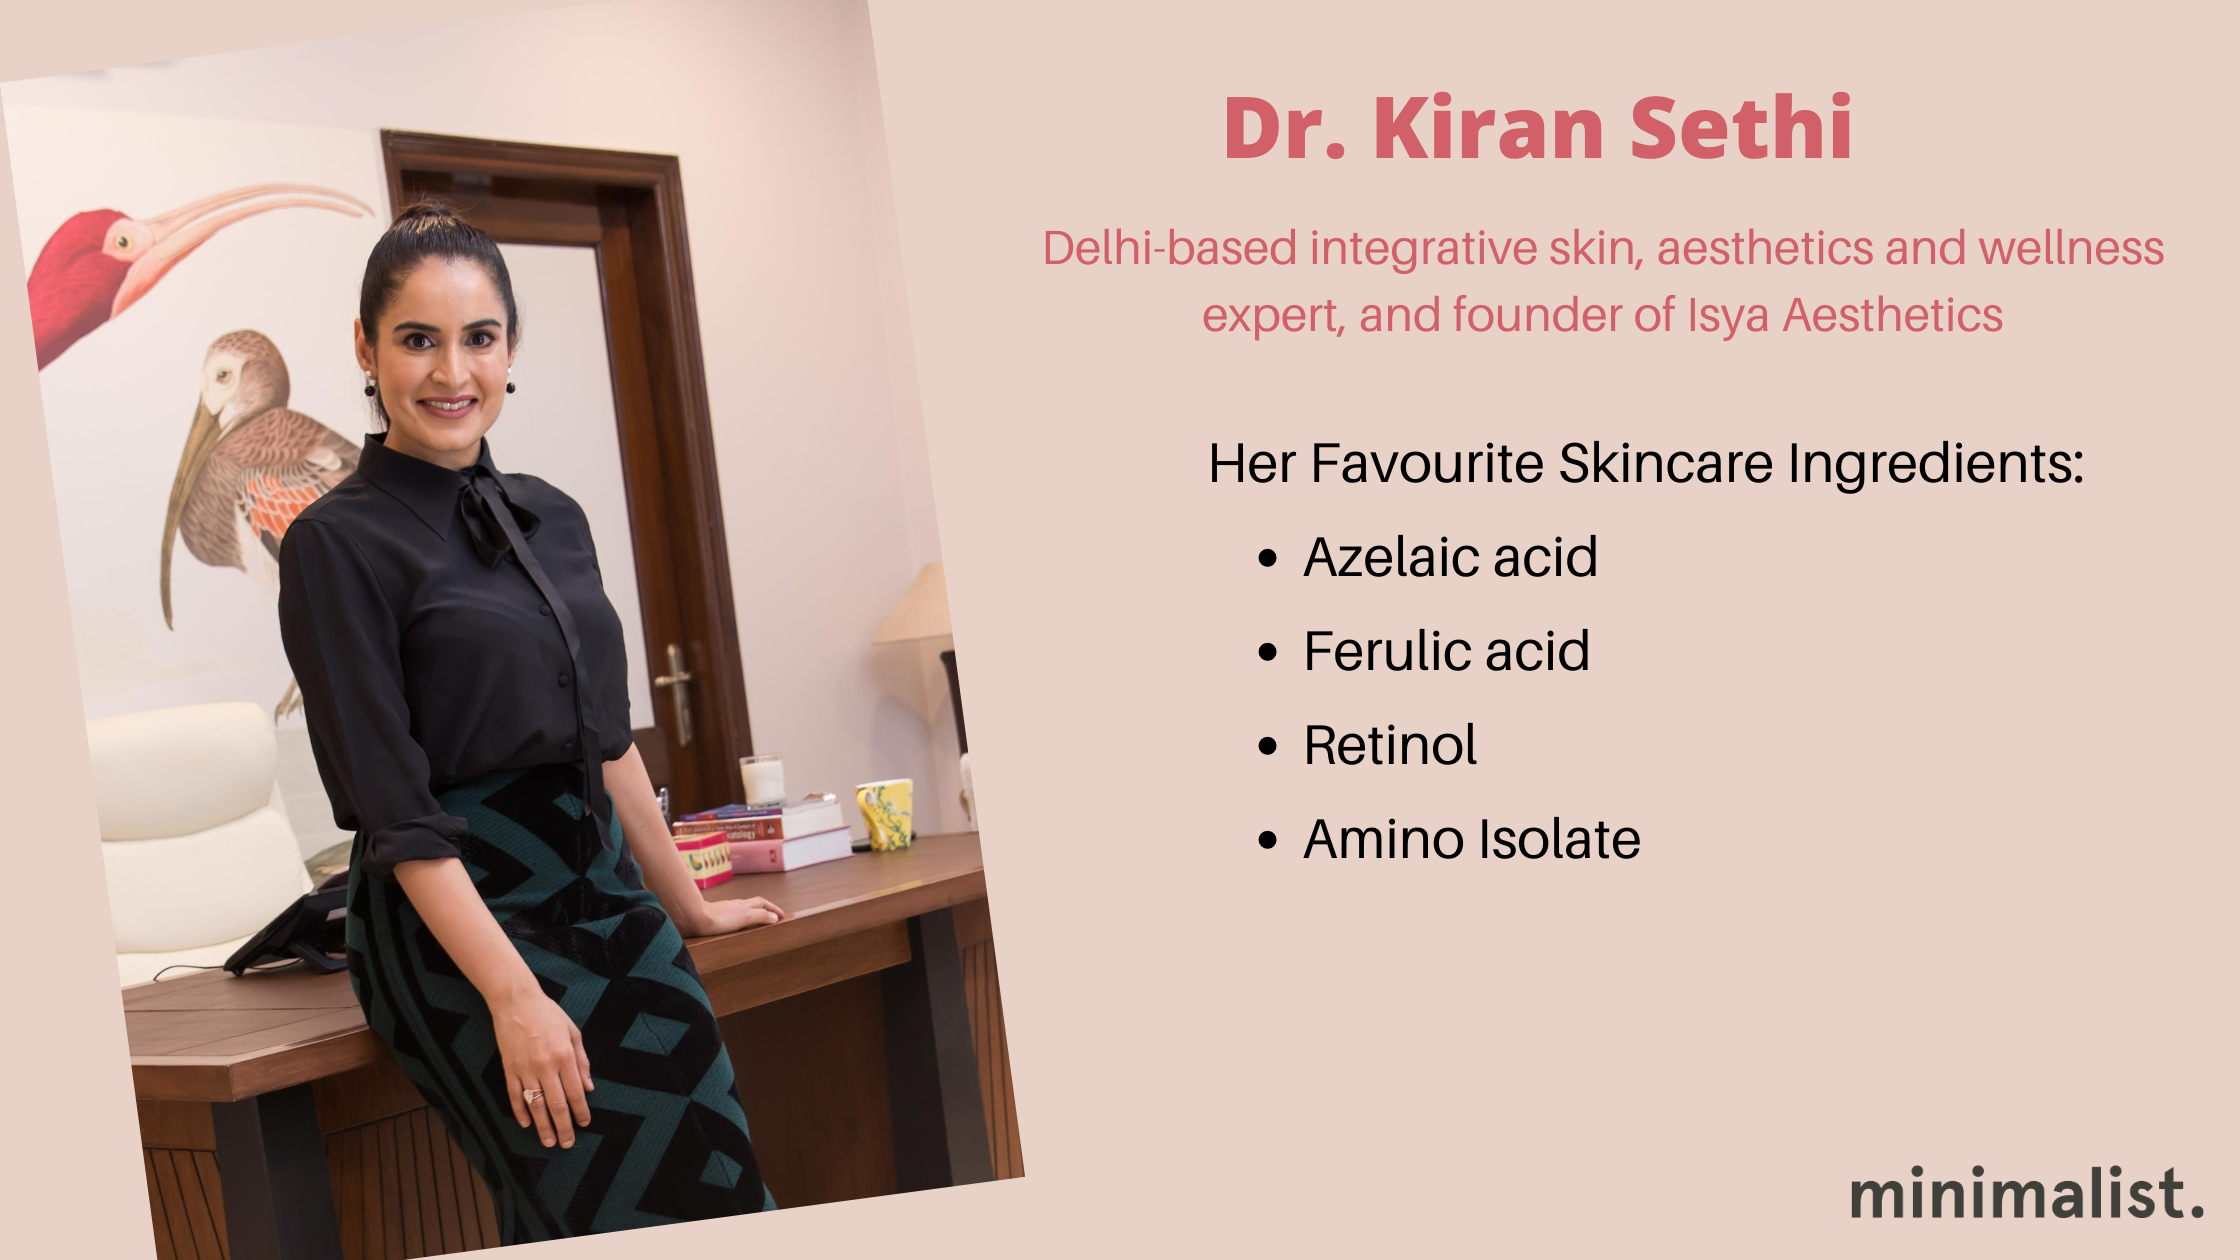 Dr. Kiran Sethi